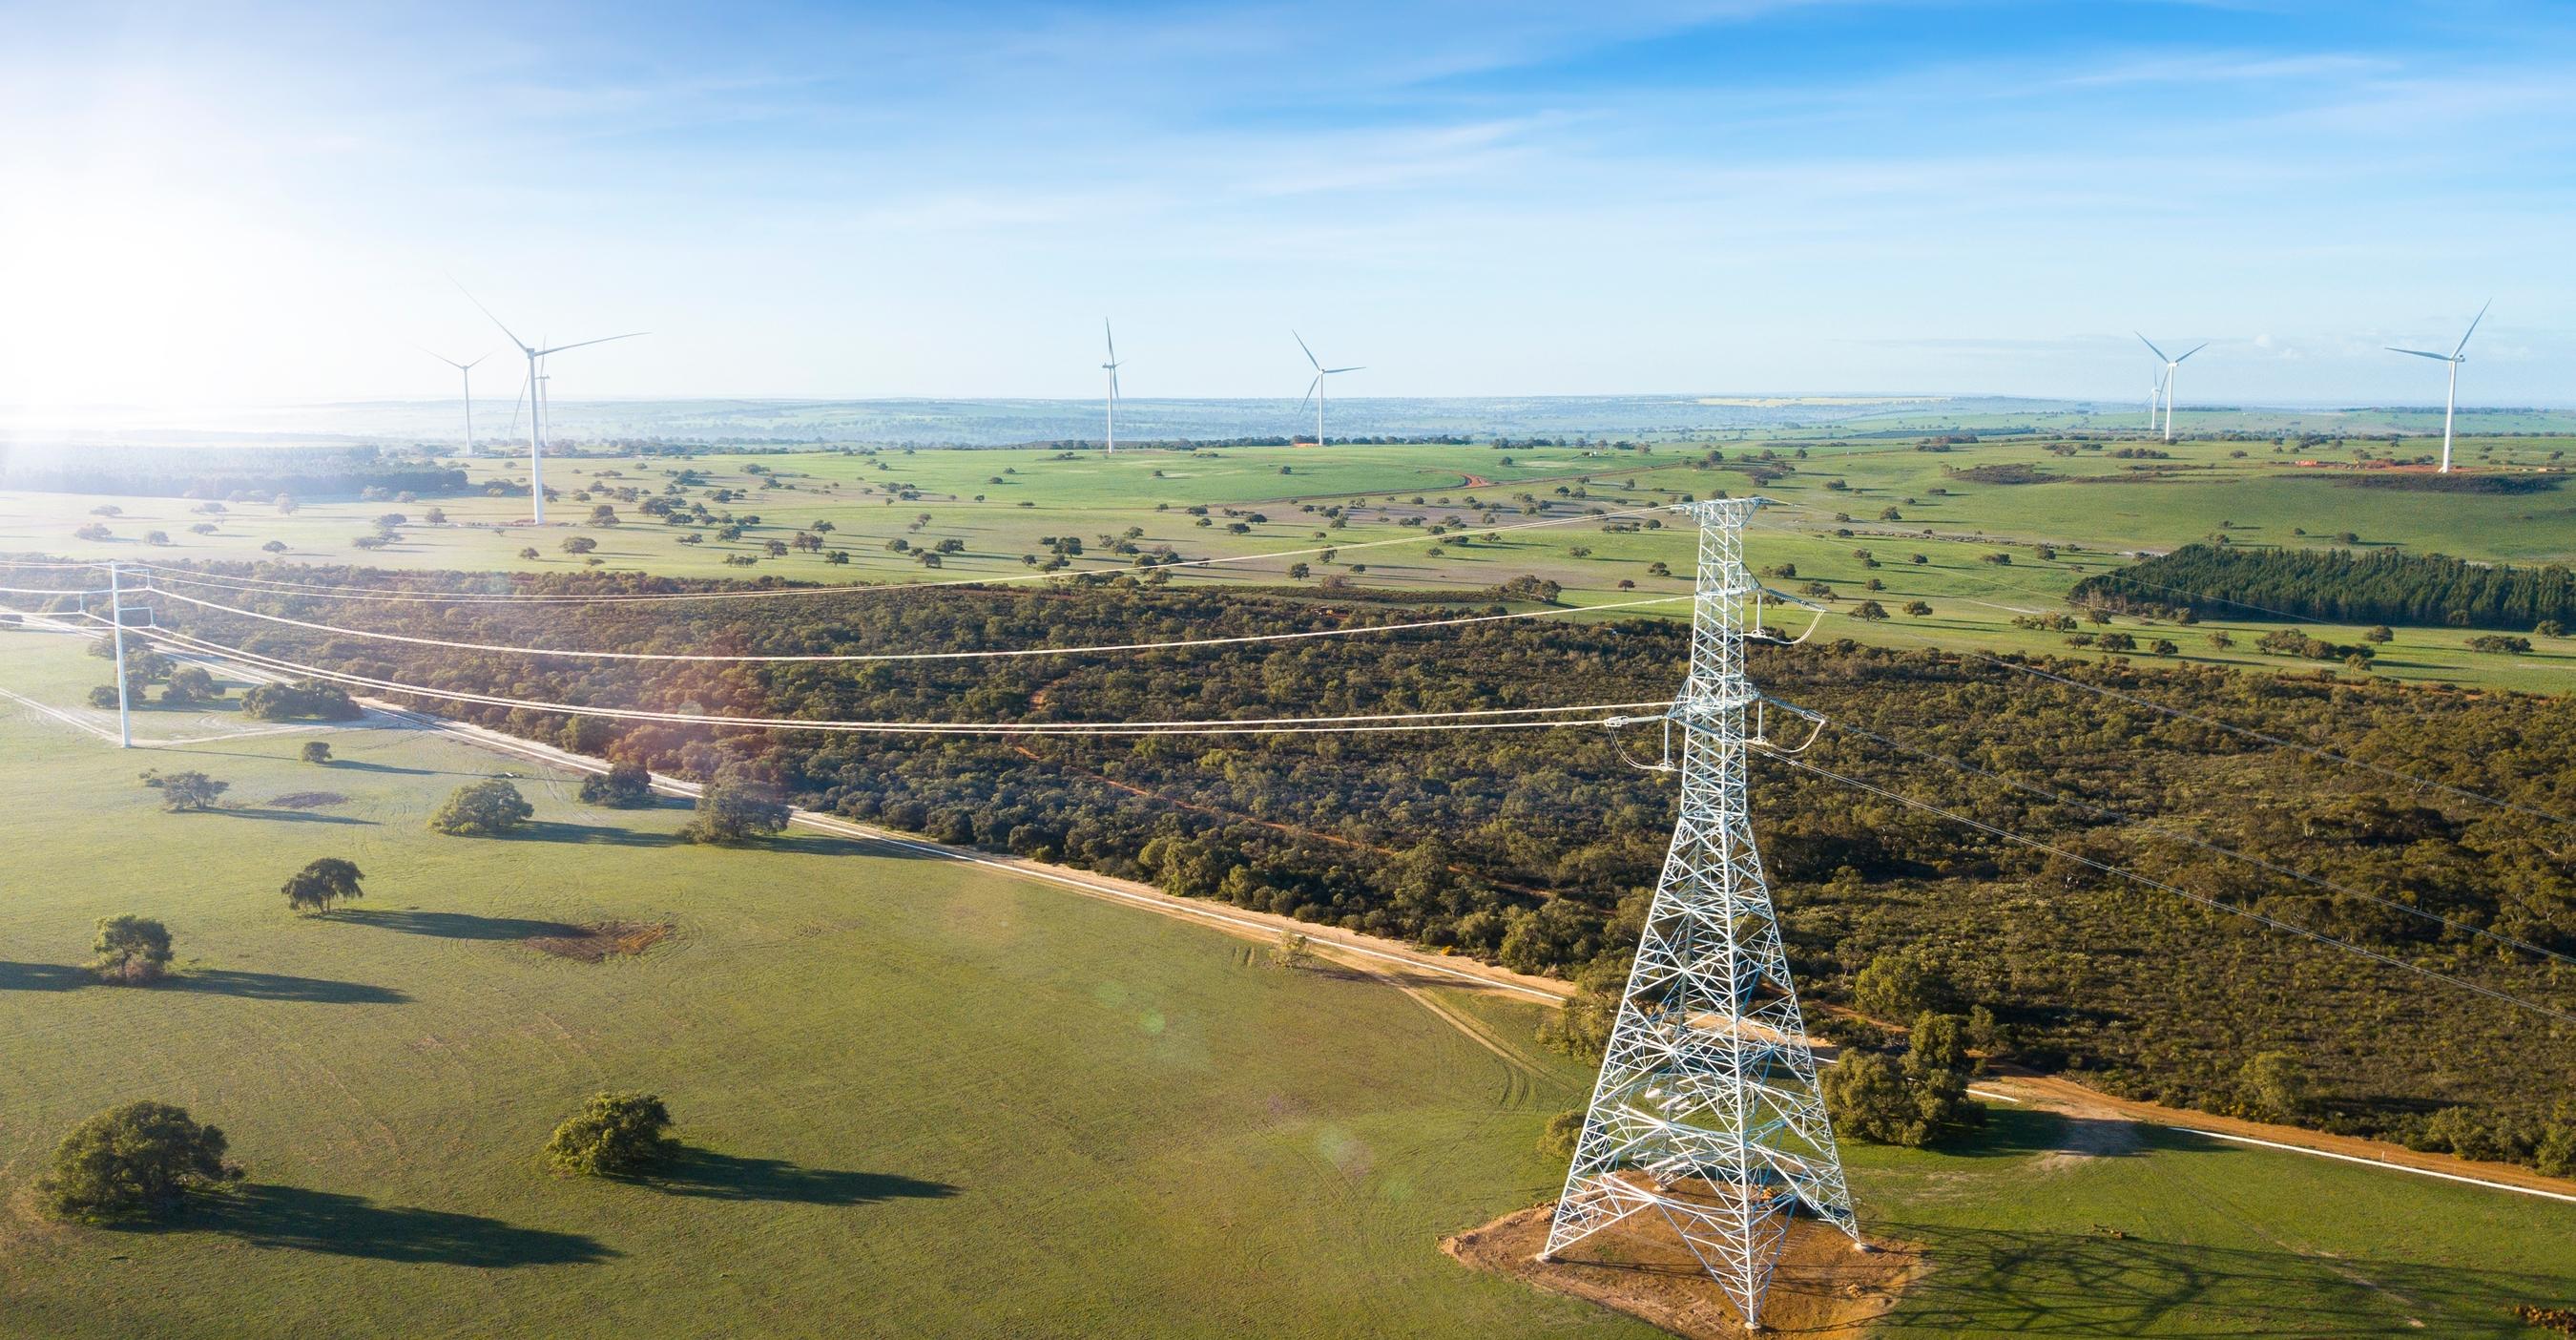 Yandin wind farm in Western Australia